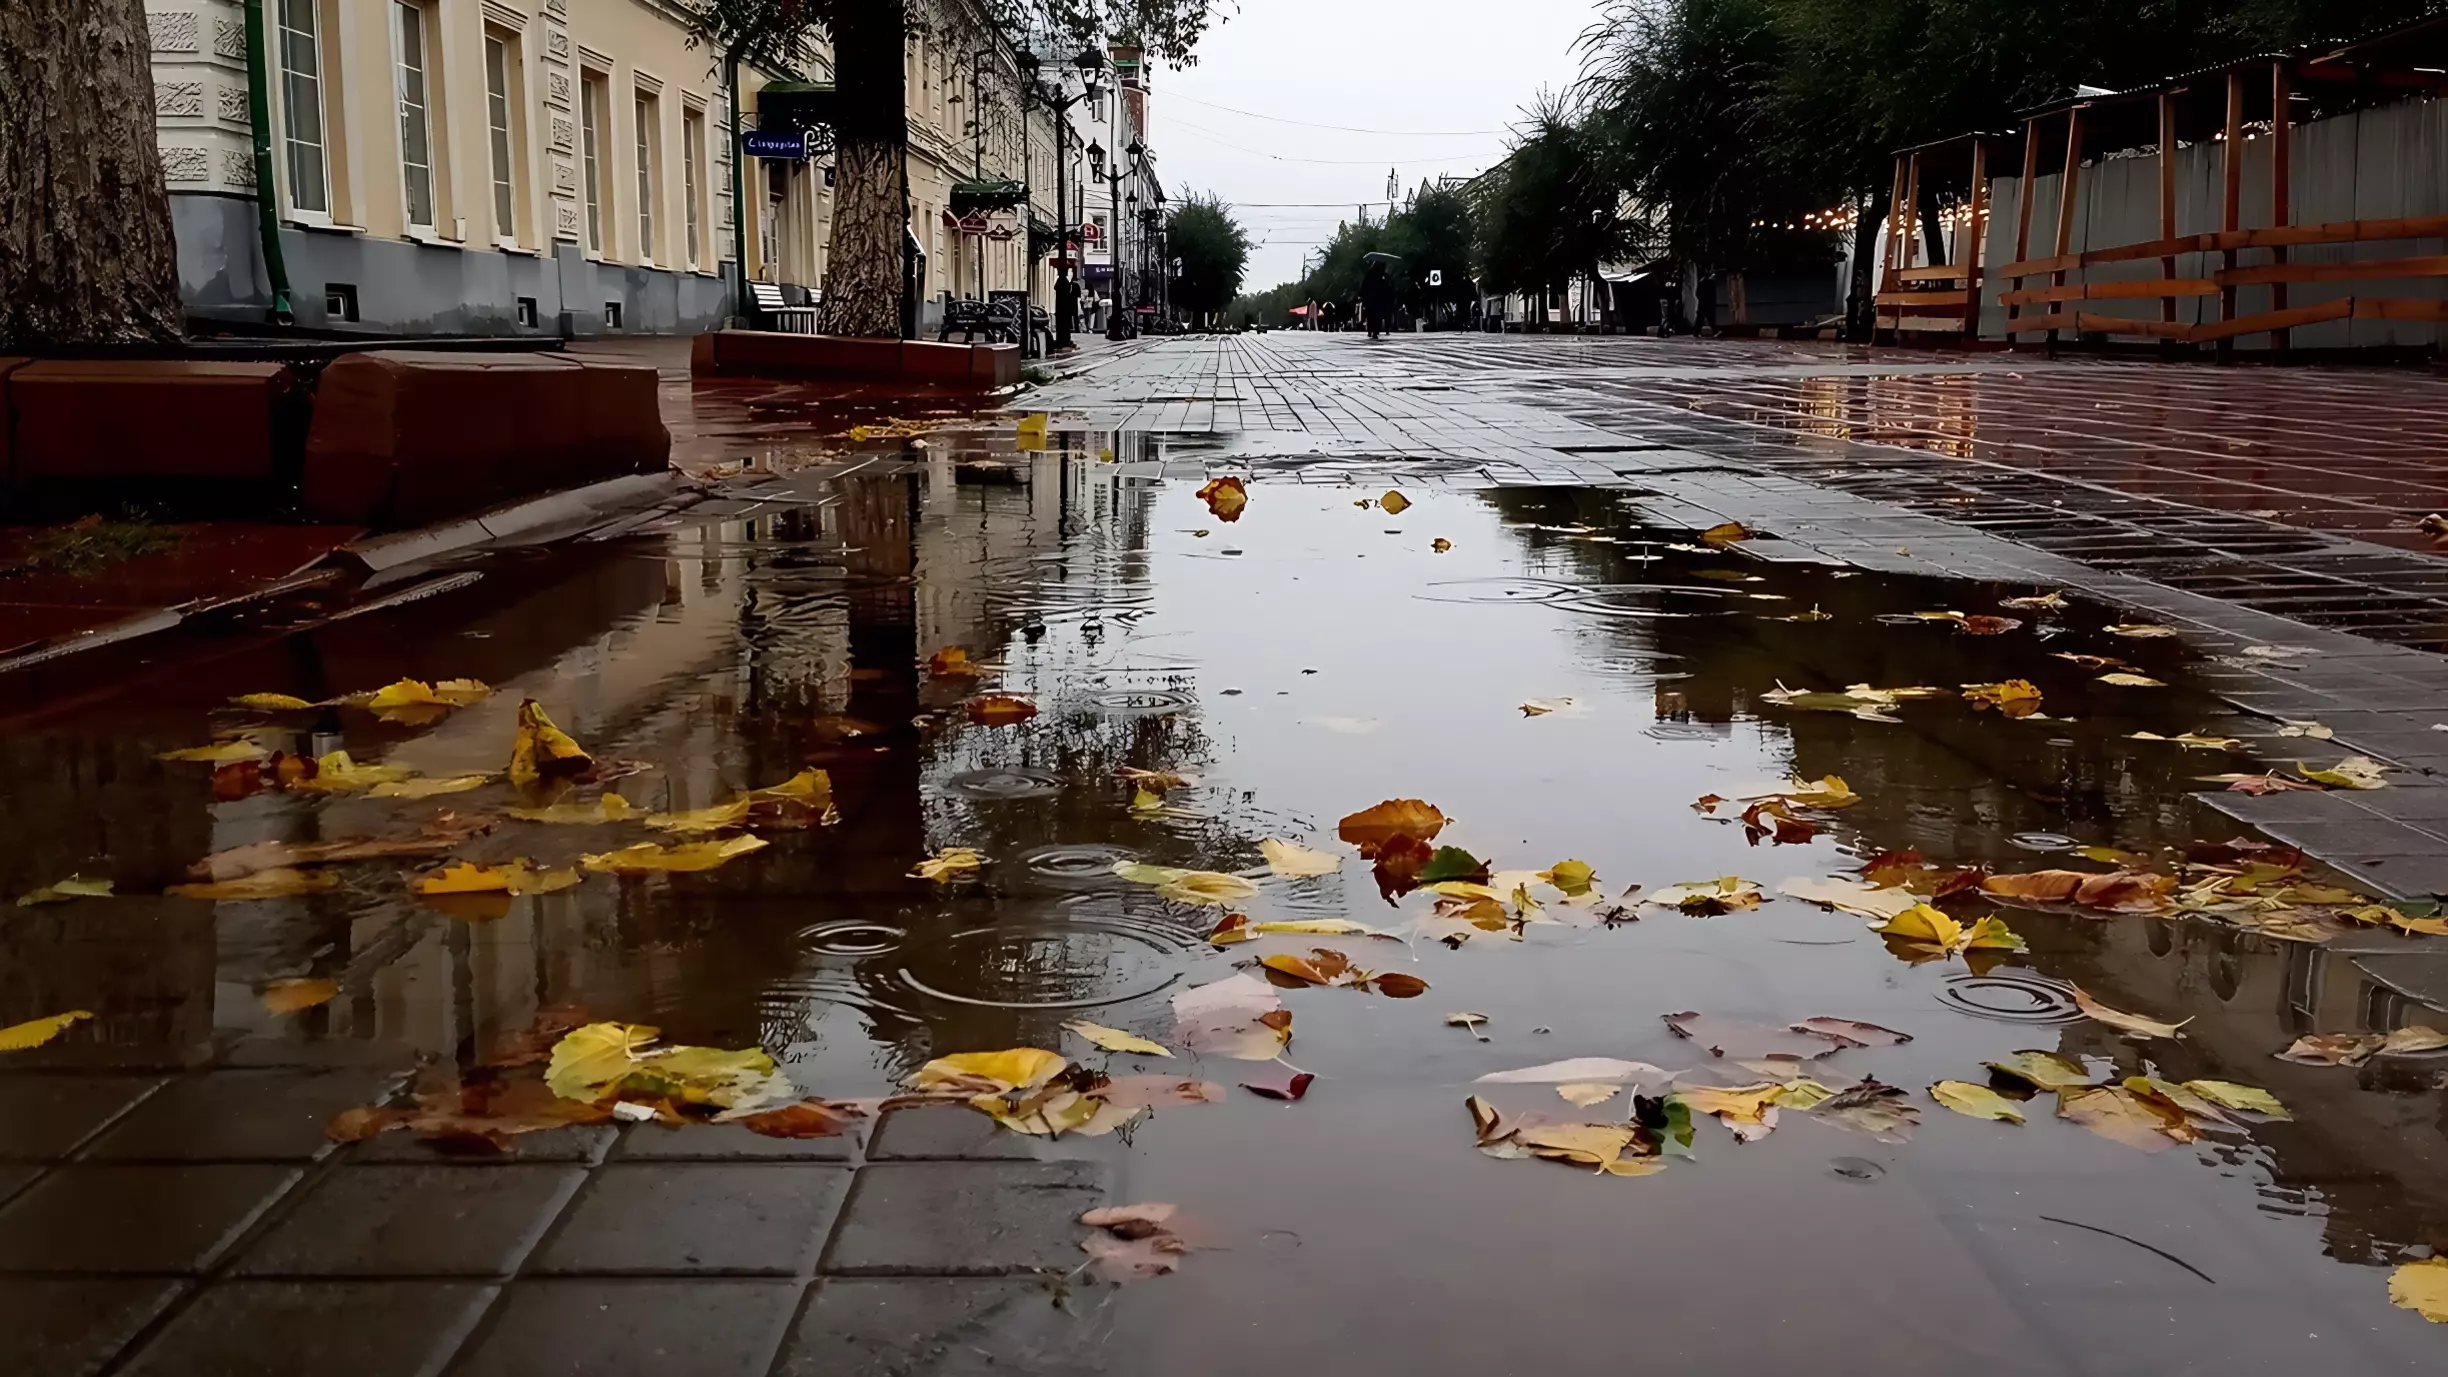 Сигналки срабатывали: жёсткий ночной ливень с грозой третировали Владивосток — видео